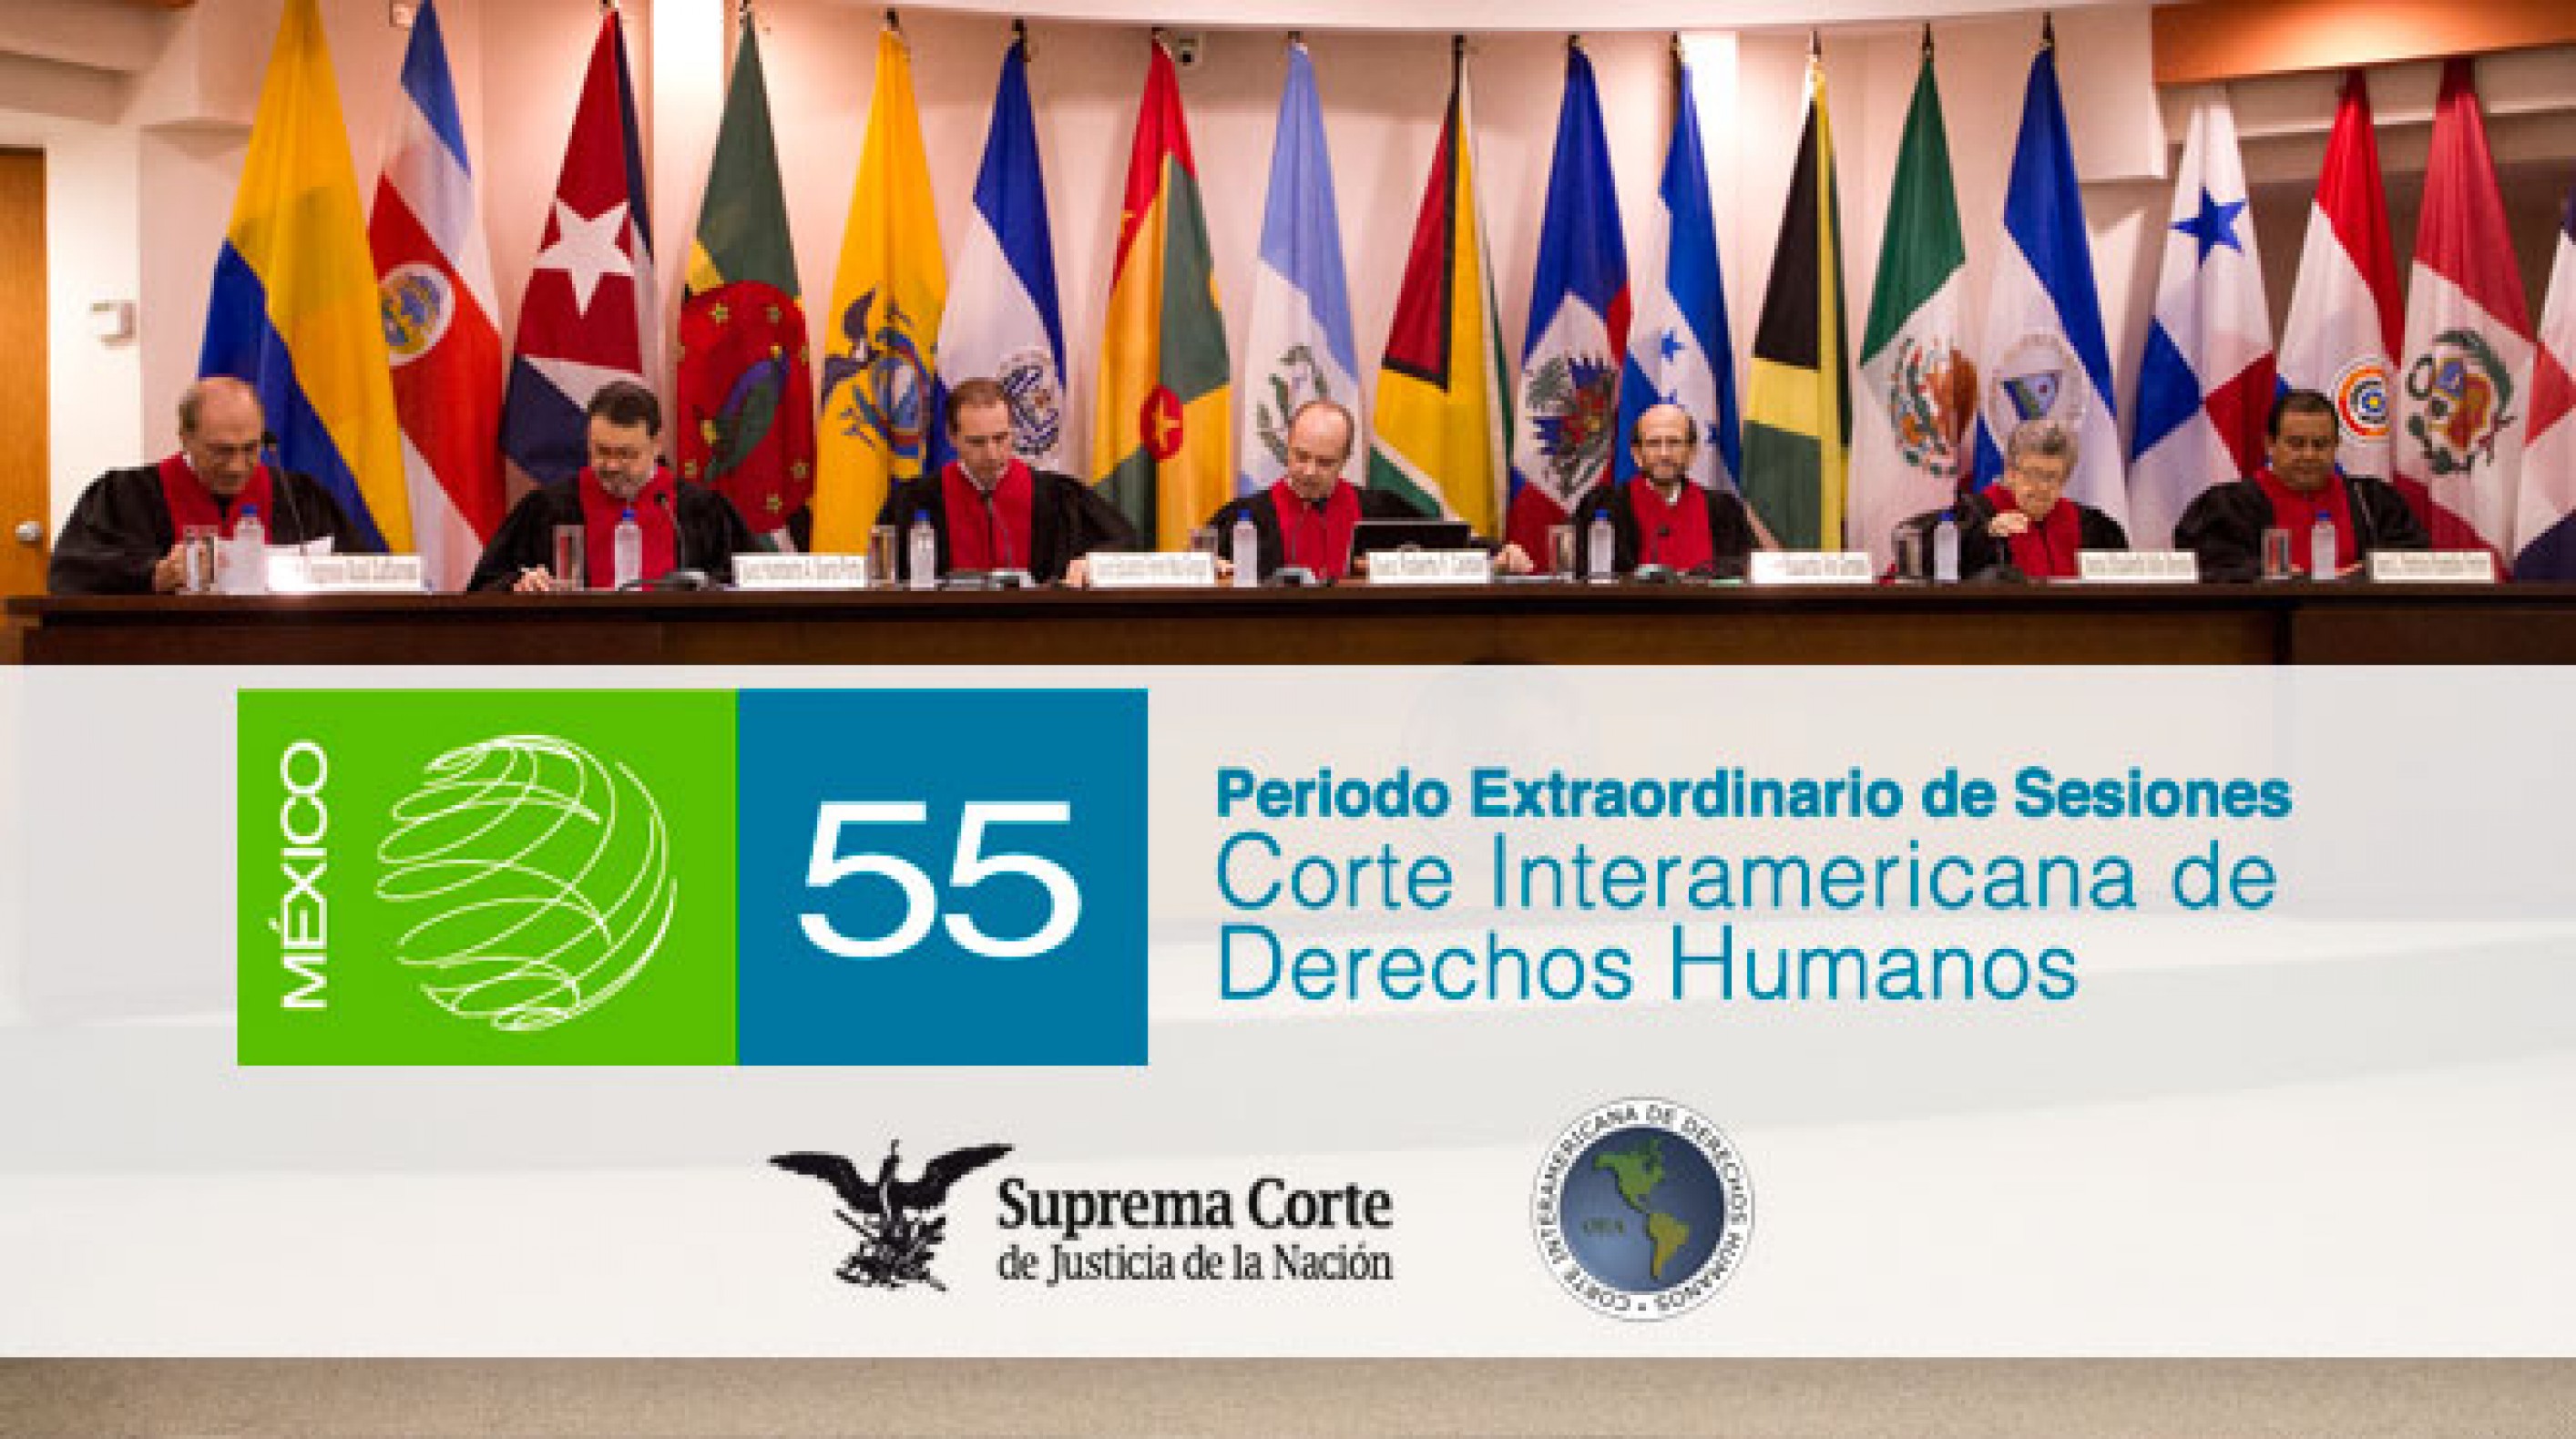 Corte interamericano de derechos humanos cognizant el salvador